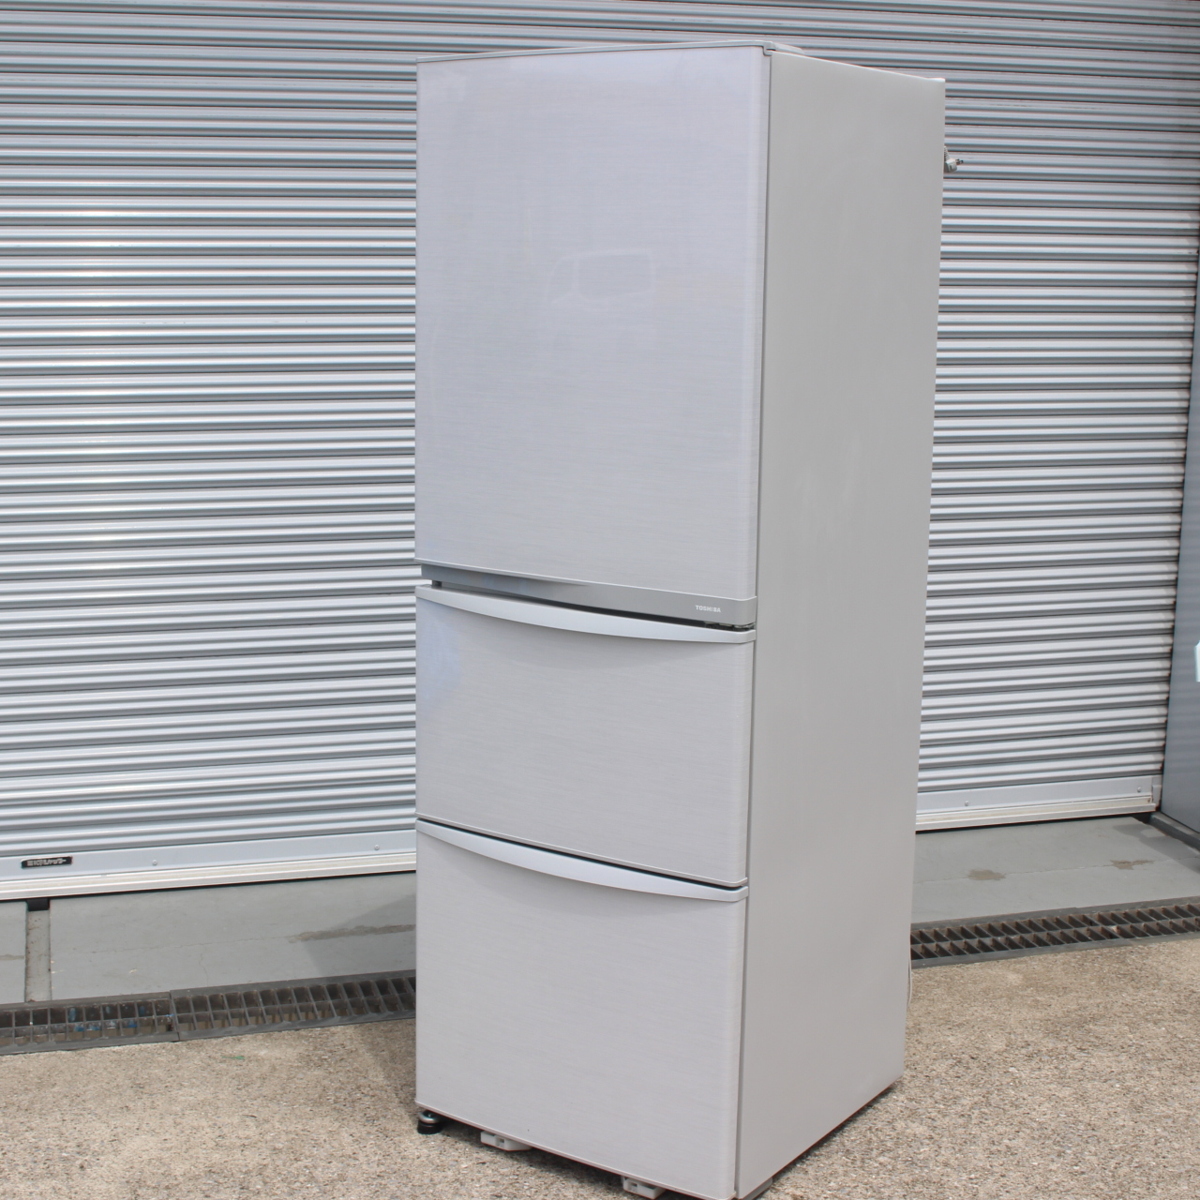 東芝 ノンフロン冷凍冷蔵庫 GR-E38N 375L 3ドア ビッグフリーザー 2013年製